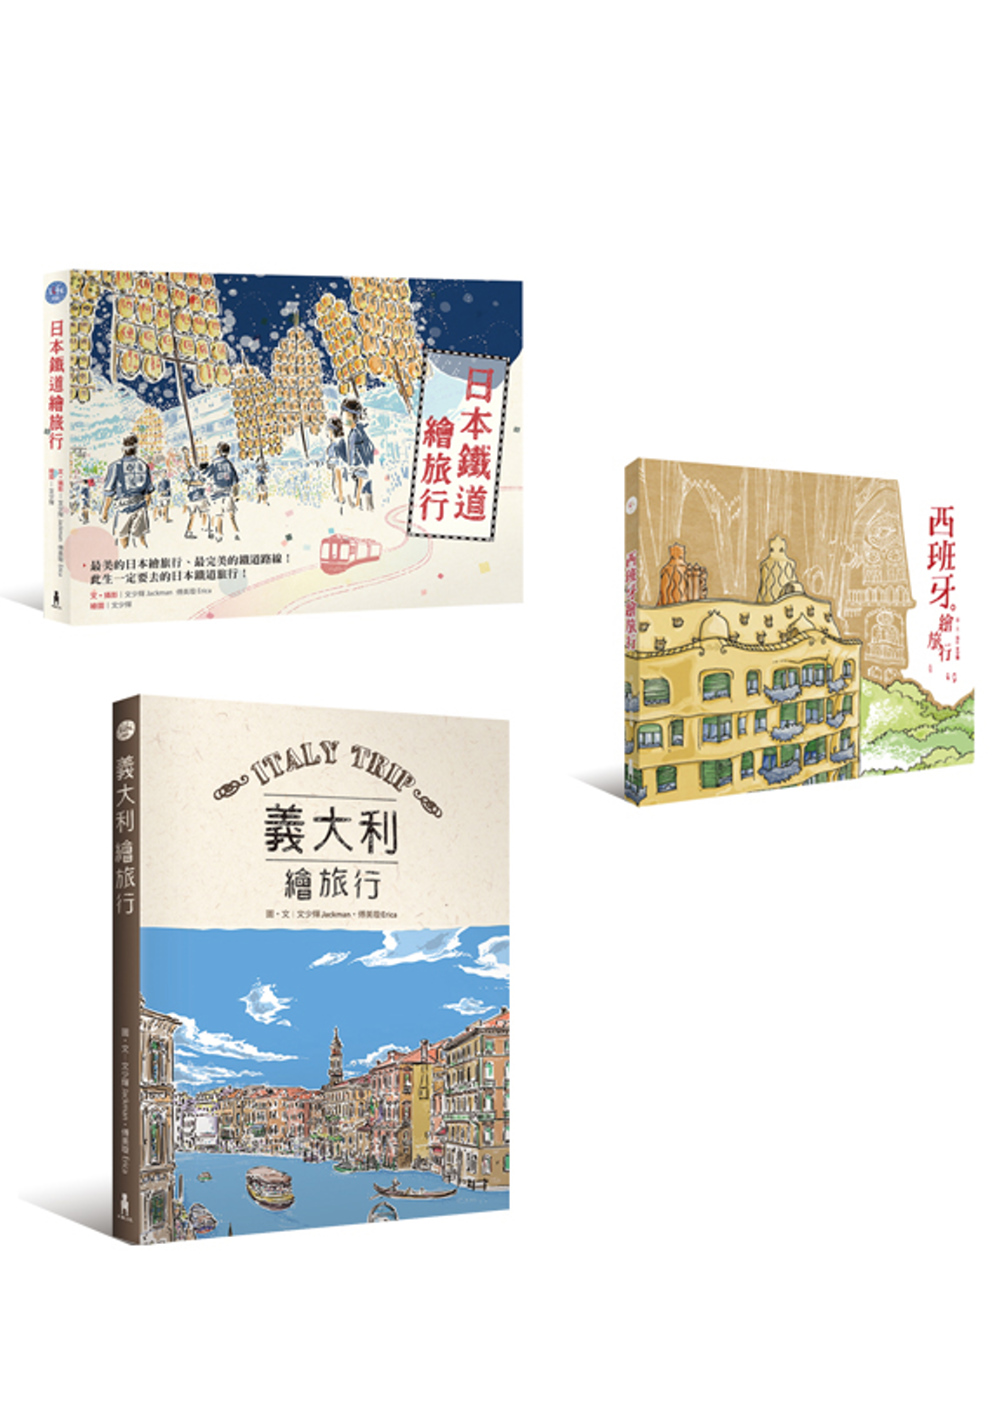 好好玩繪旅行(3冊套書) (日本鐵道繪旅行+西班牙繪旅行+義...